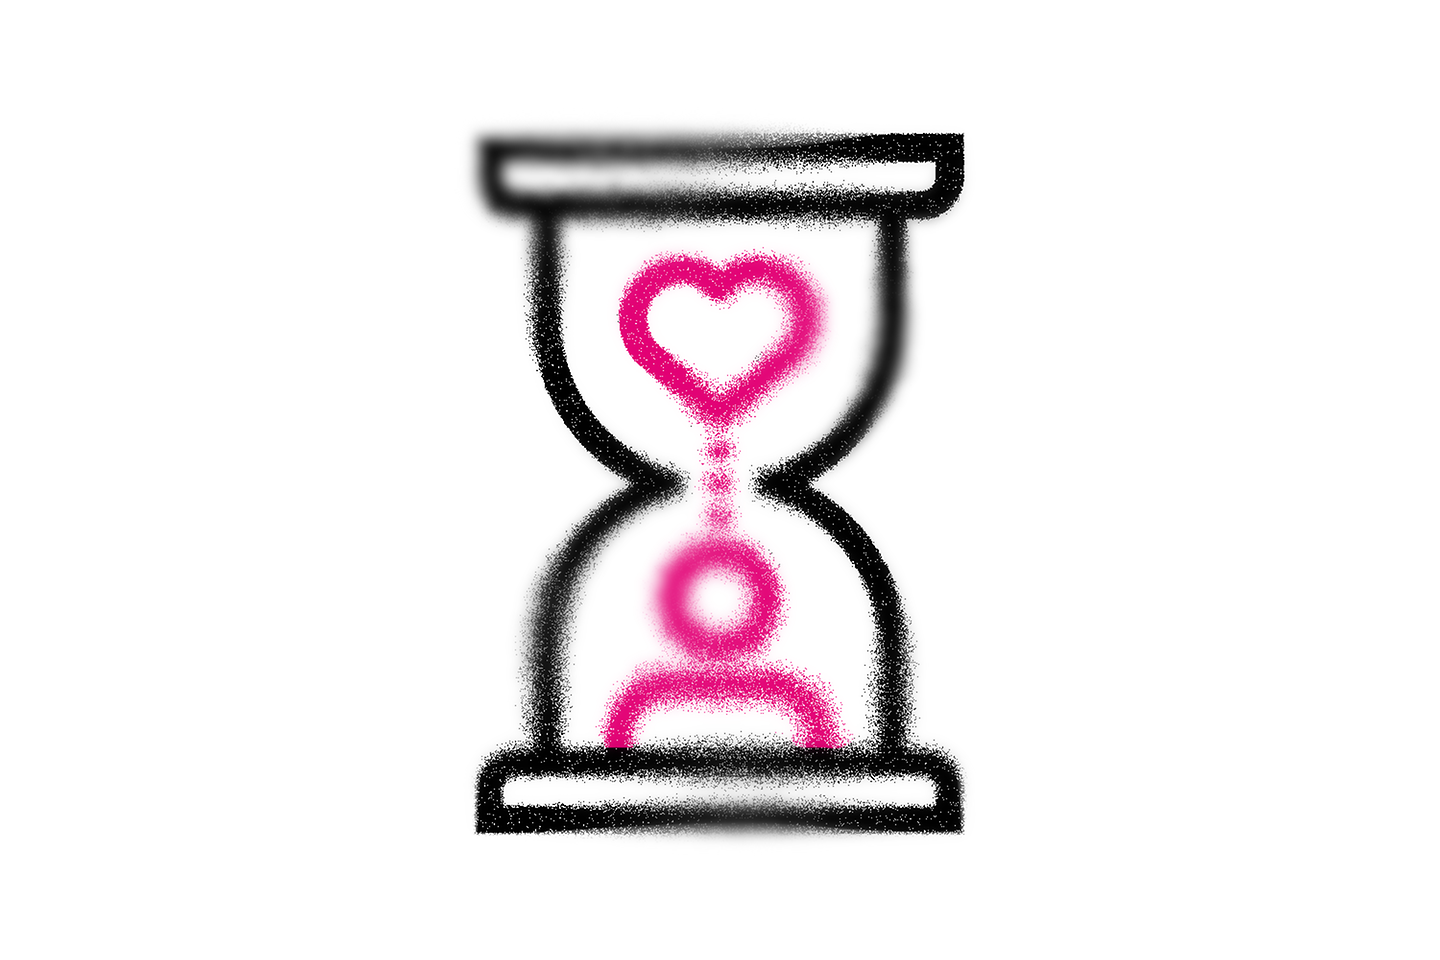 Reloj de arena que representa el corazón y la persona